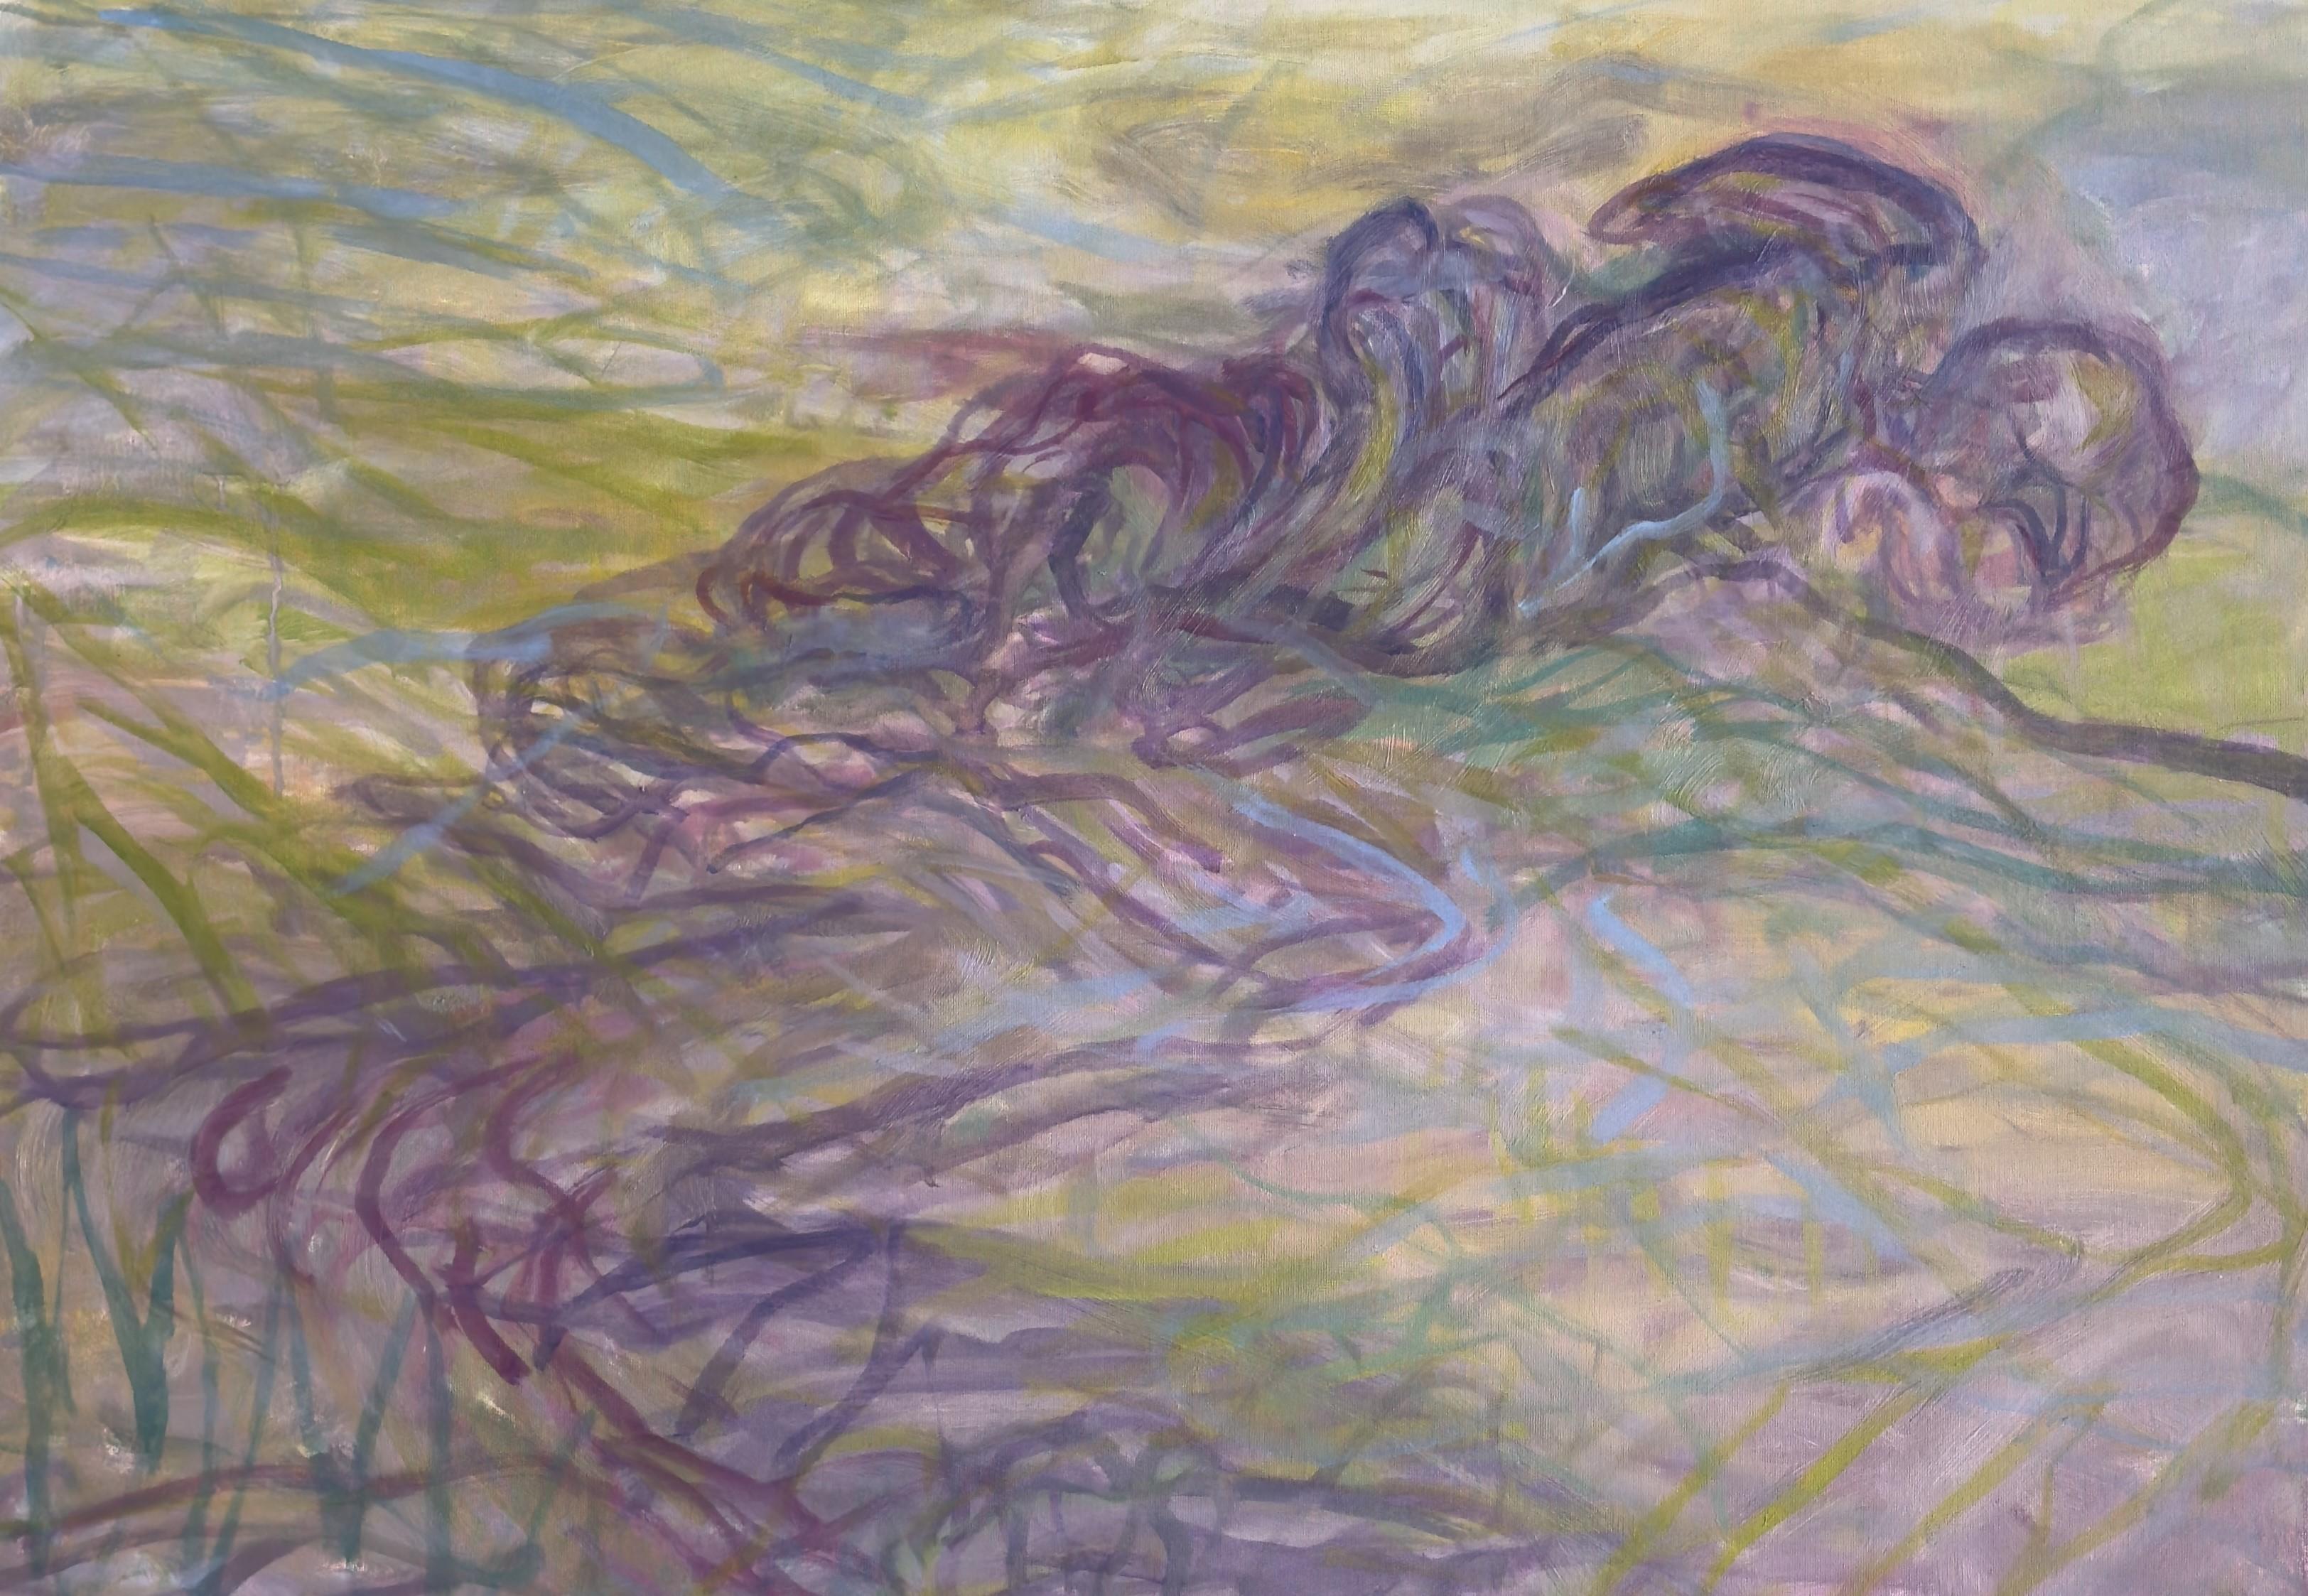 Body in the Field #5 - Zeitgenössische Kunst, abstrakte Malerei, Landschaft, gelb (Abstrakter Expressionismus), Painting, von Zsolt Berszán